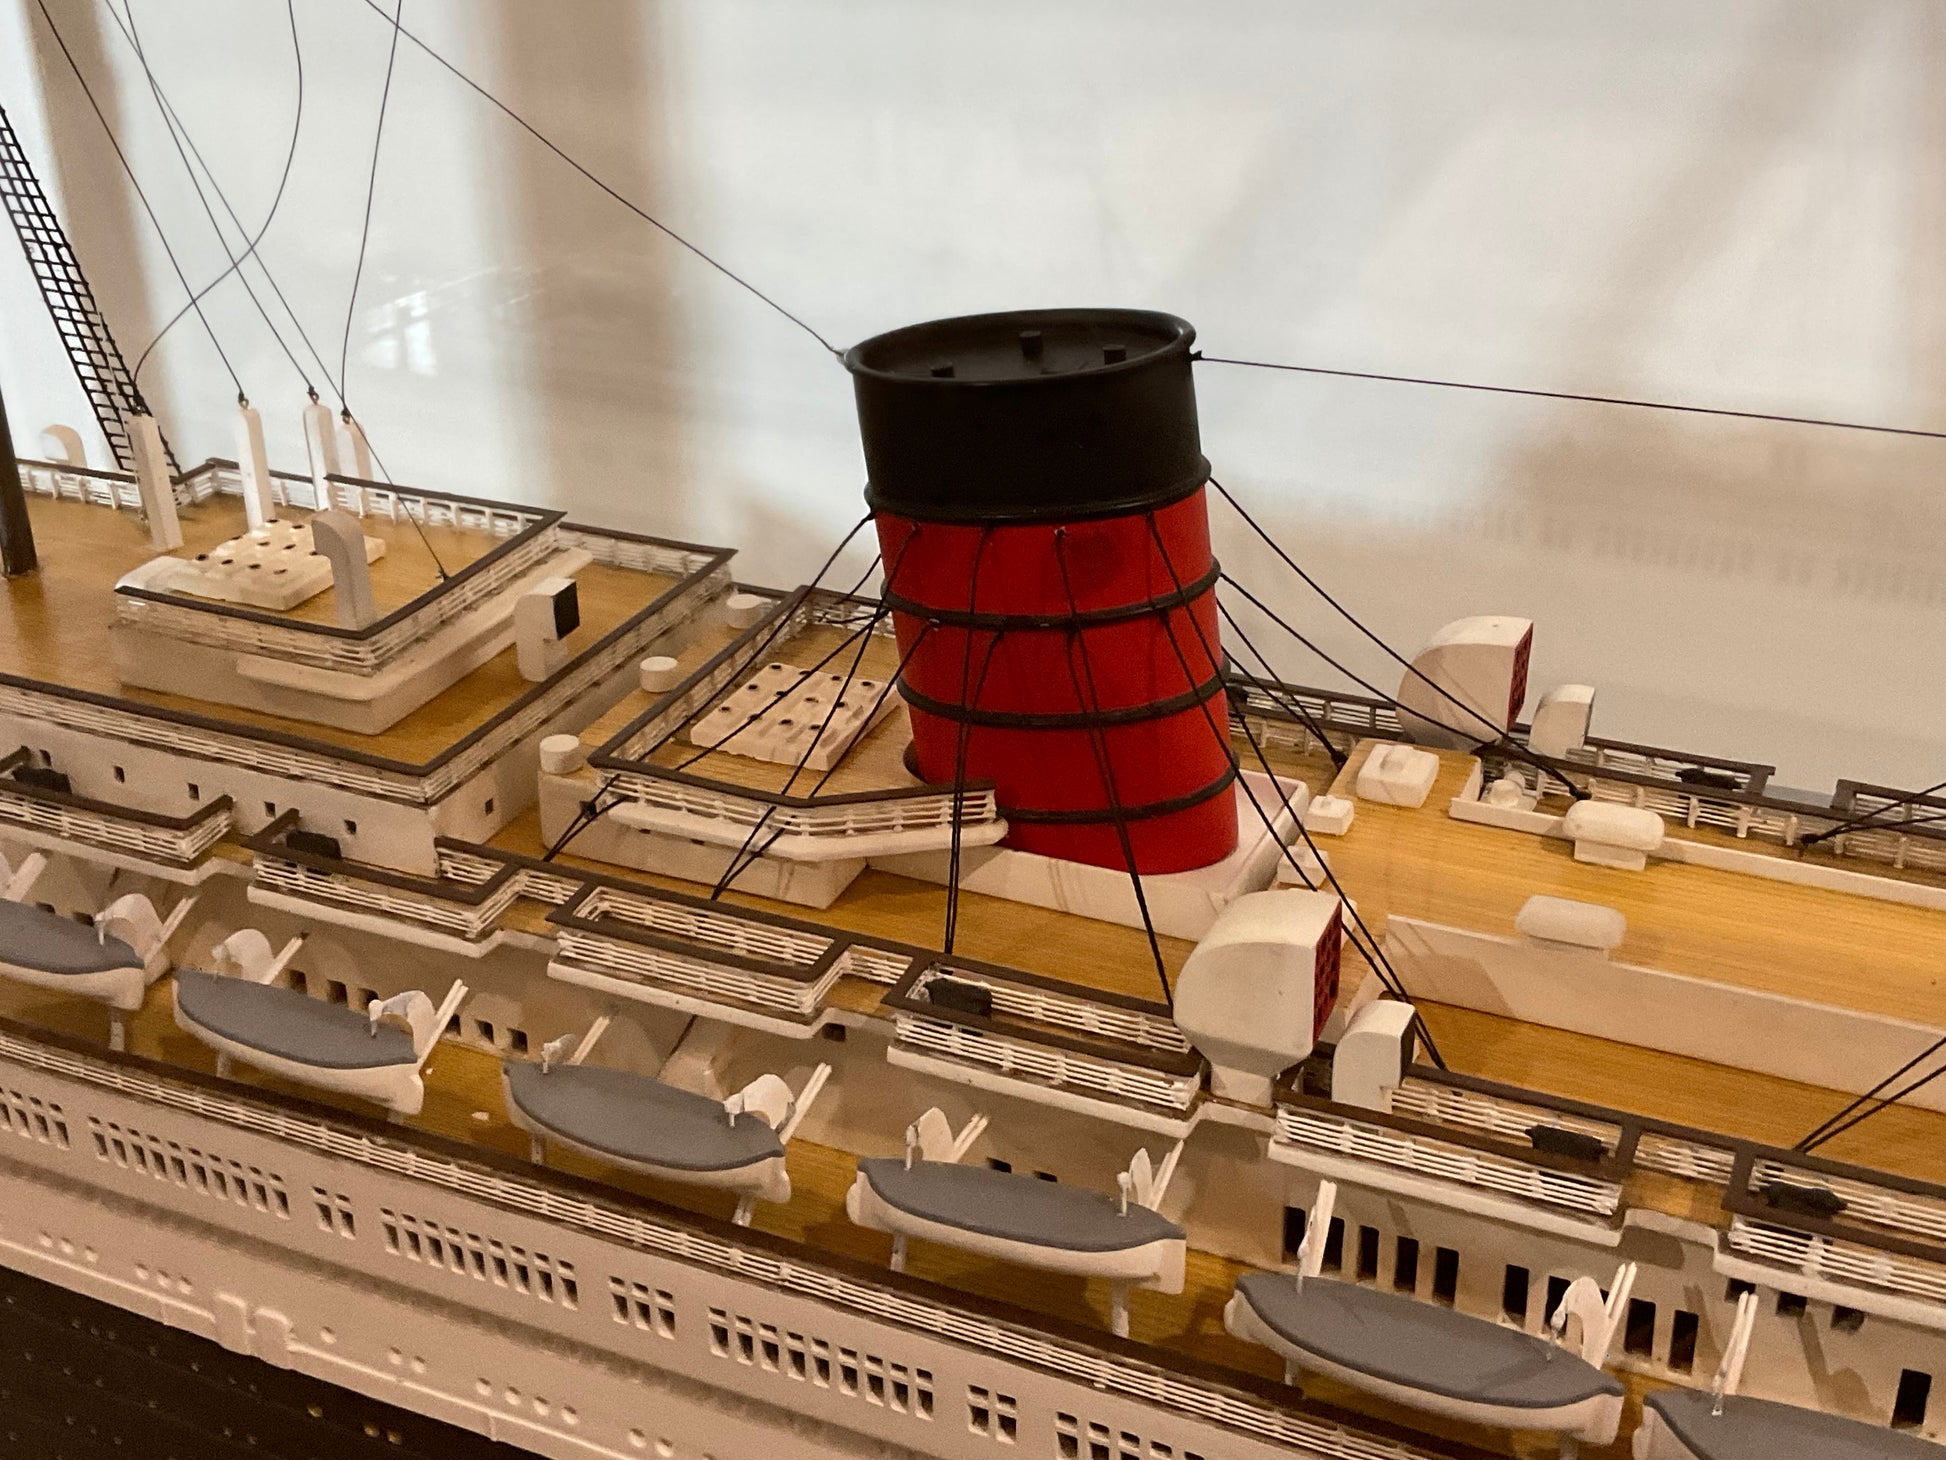 Ocean Liner Queen Mary Ship Model - Lannan Gallery